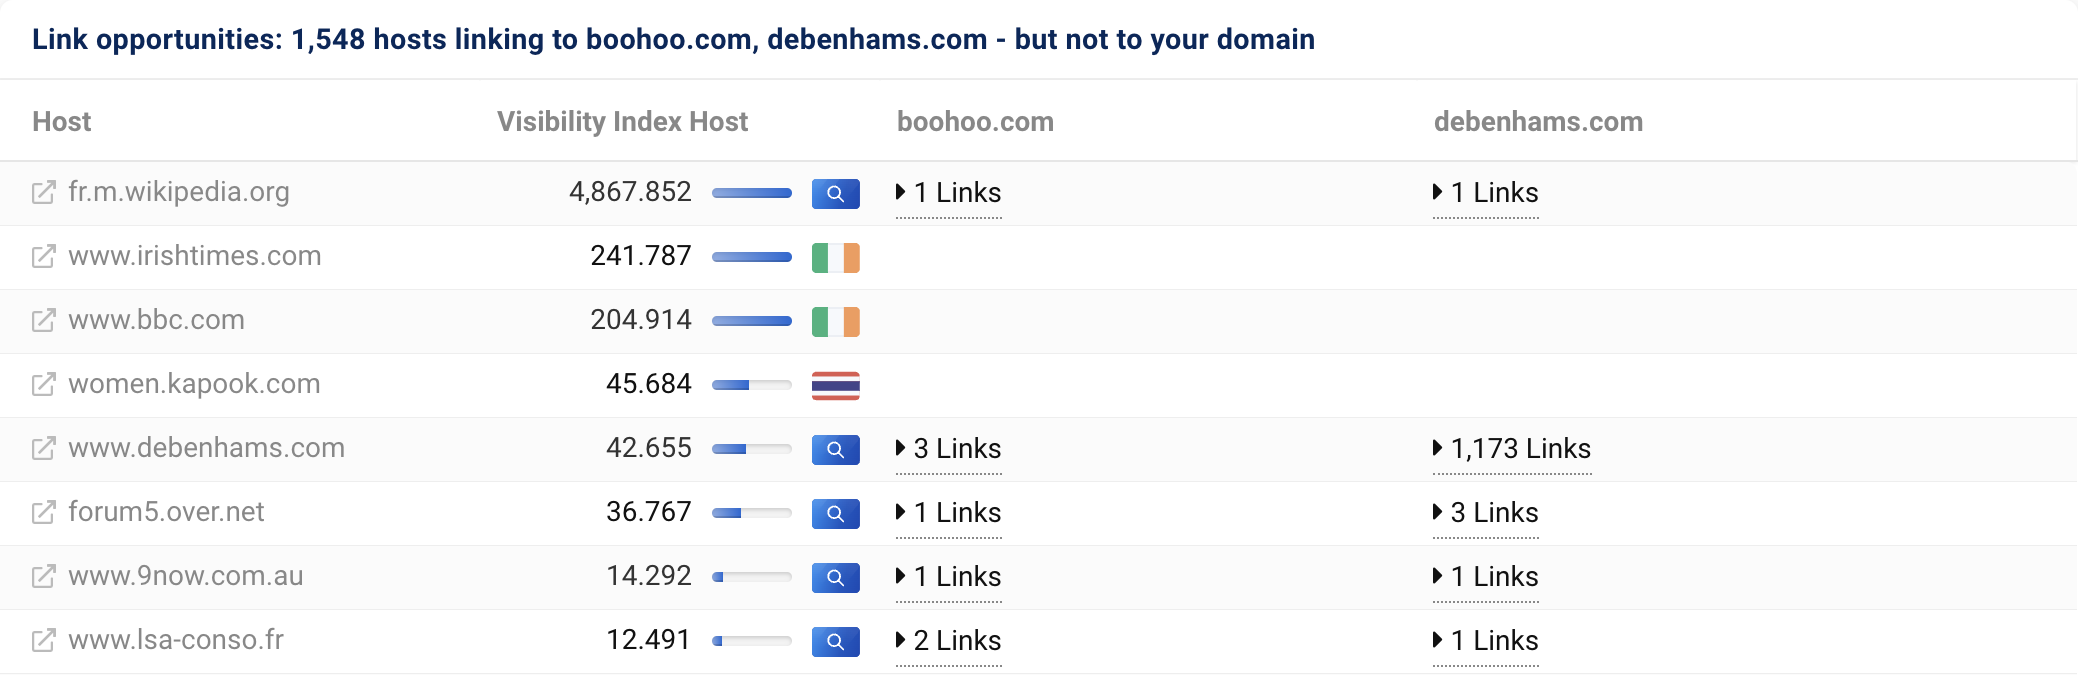 1.548 hosts possuem links para boohoo.com e debenhams.com, mas não para nosso domínio asos.com.